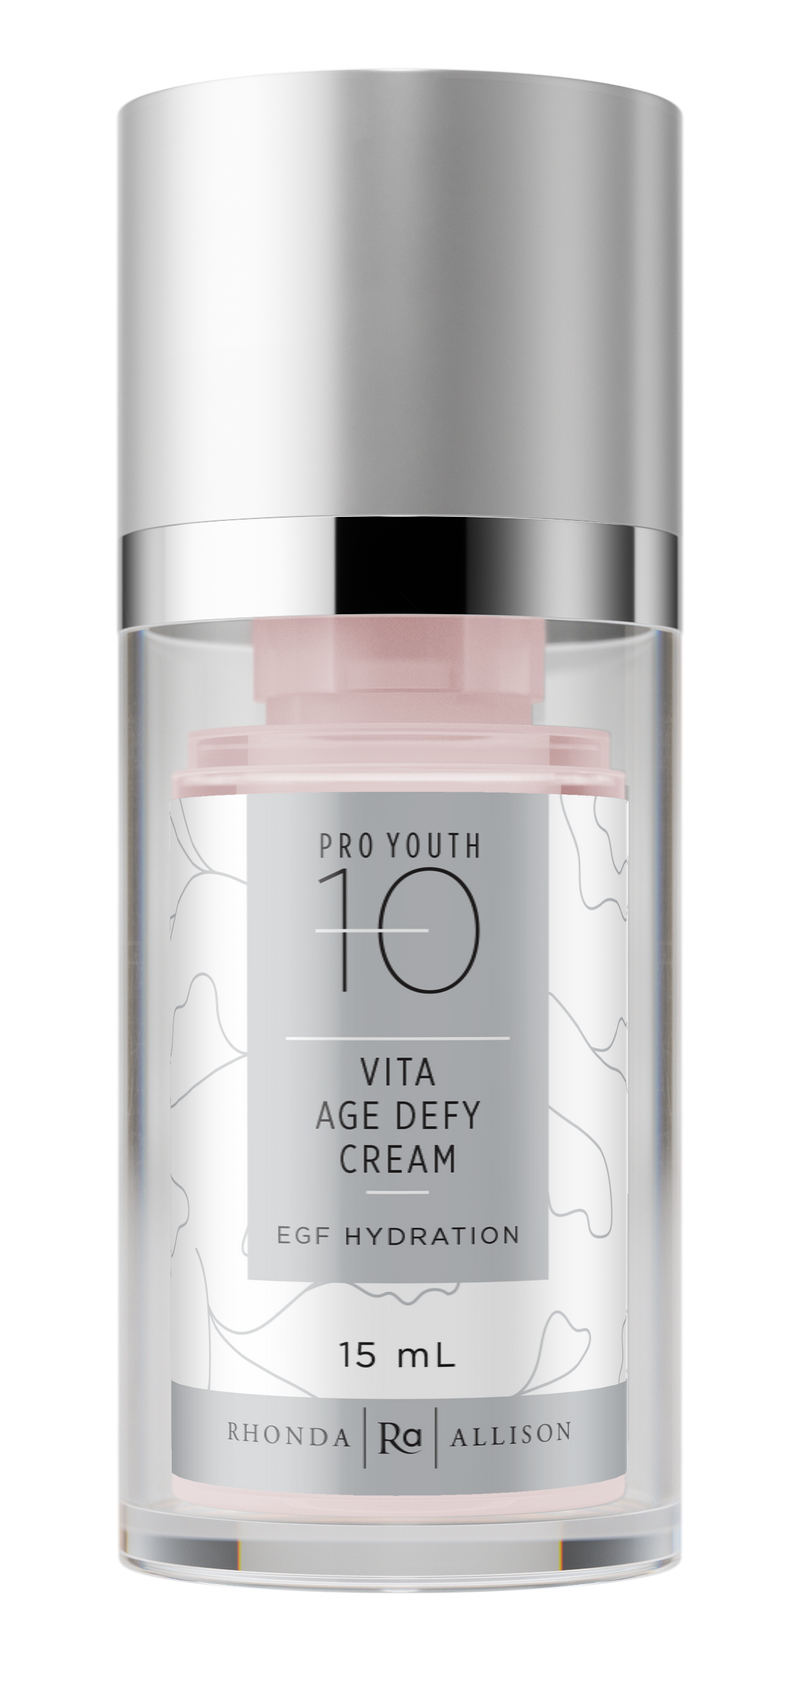 Vita Age Defy Cream/EGF Hydration